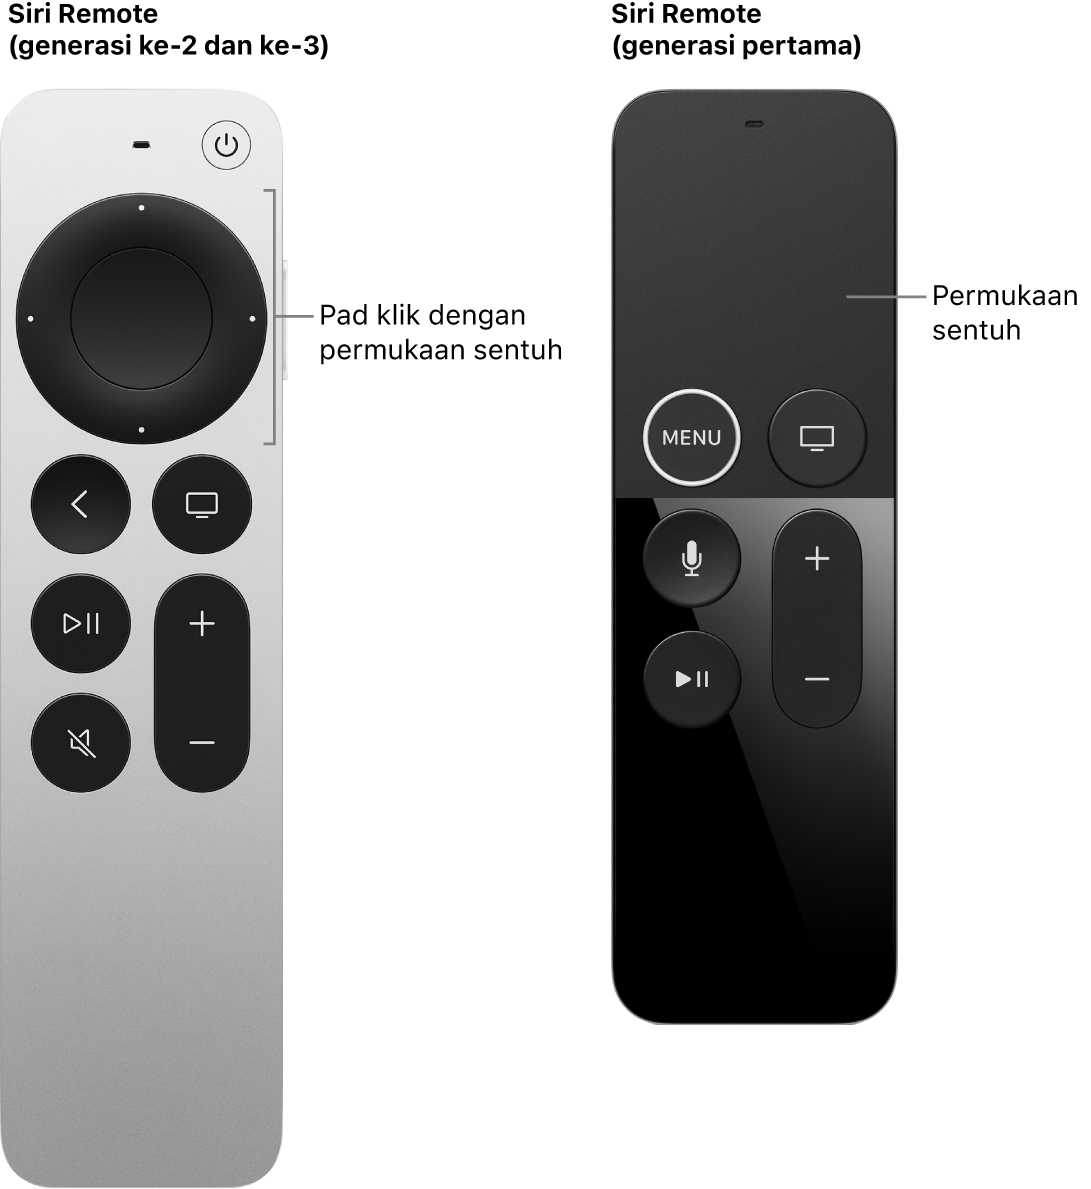 Siri Remote (generasi ke-2 dan ke-3) dengan pad klik dan Siri Remote (generasi pertama) dengan permukaan sentuh